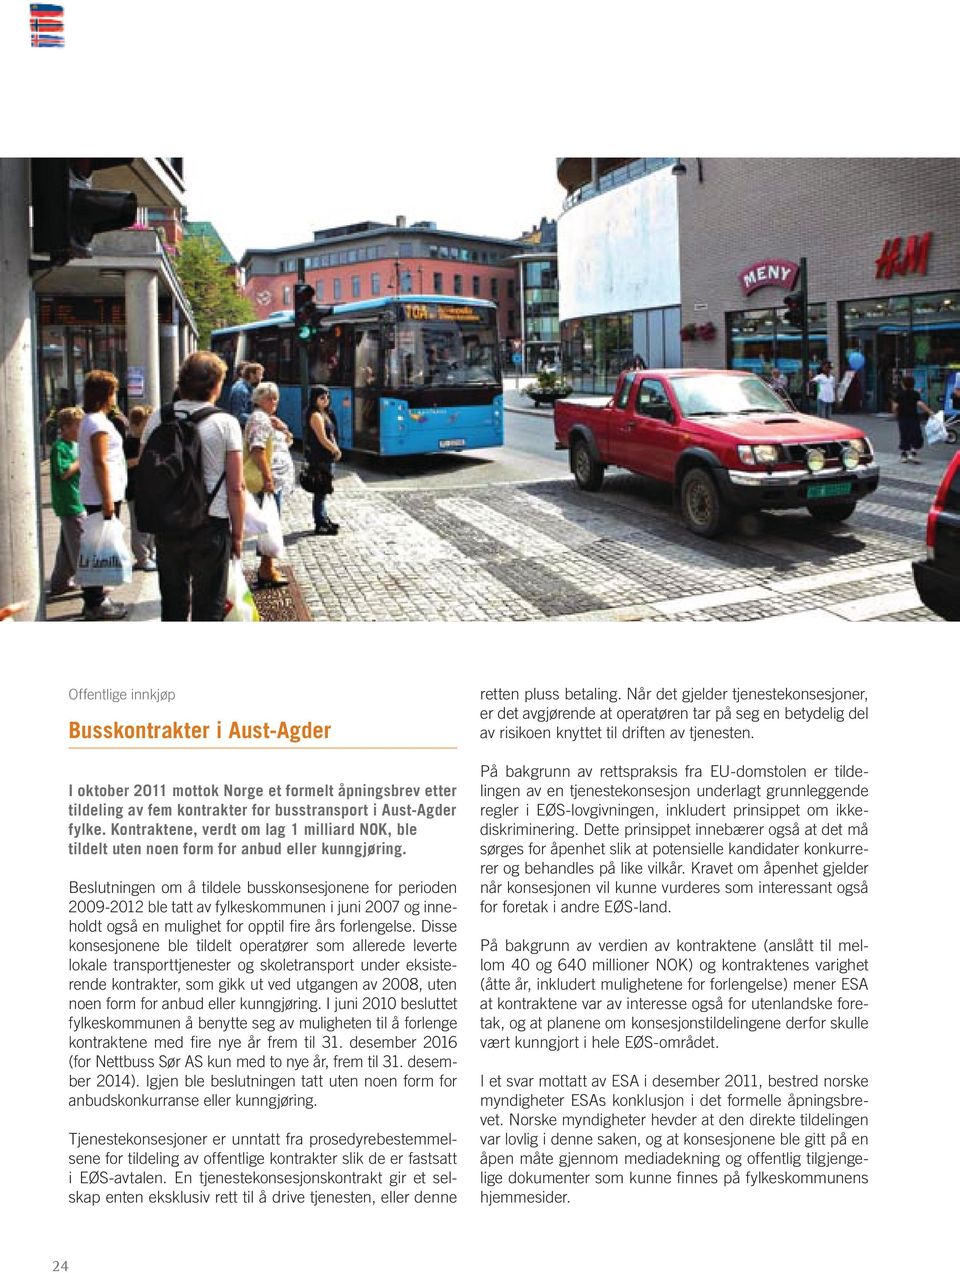 Beslutningen om å tildele busskonsesjonene for perioden 2009-2012 ble tatt av fylkeskommunen i juni 2007 og inneholdt også en mulighet for opptil fire års forlengelse.